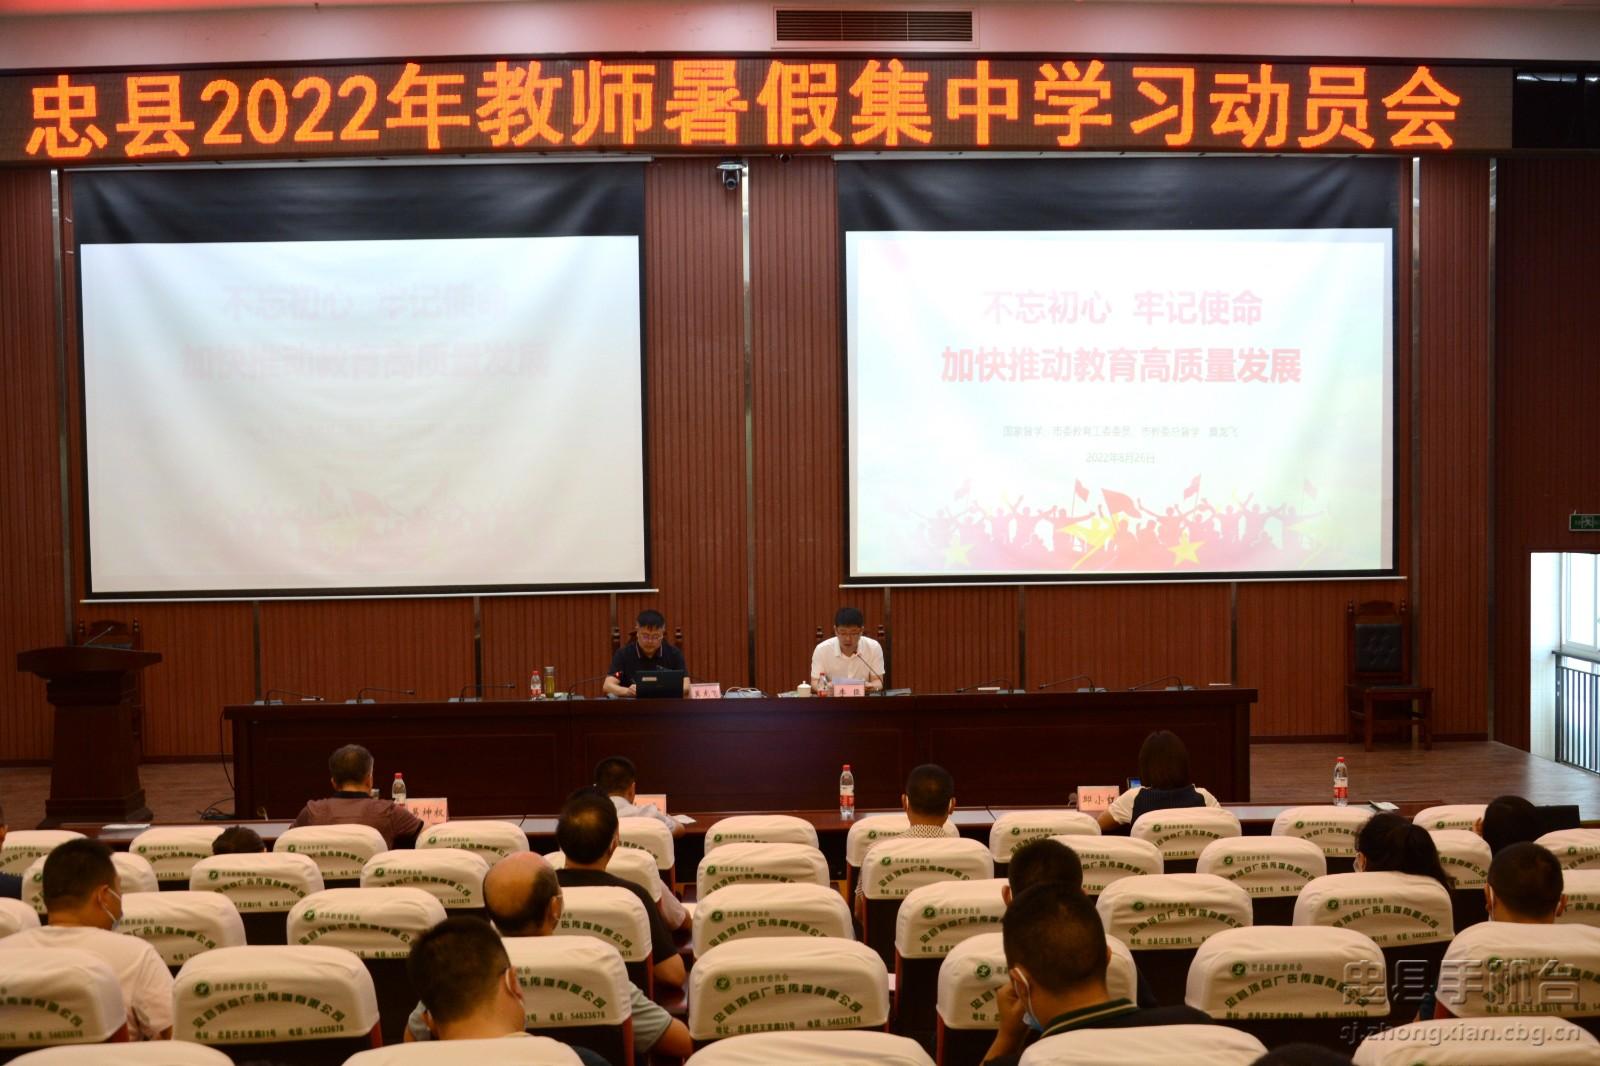 20220826-忠县2022年教师暑假学习动员会 (1).jpg